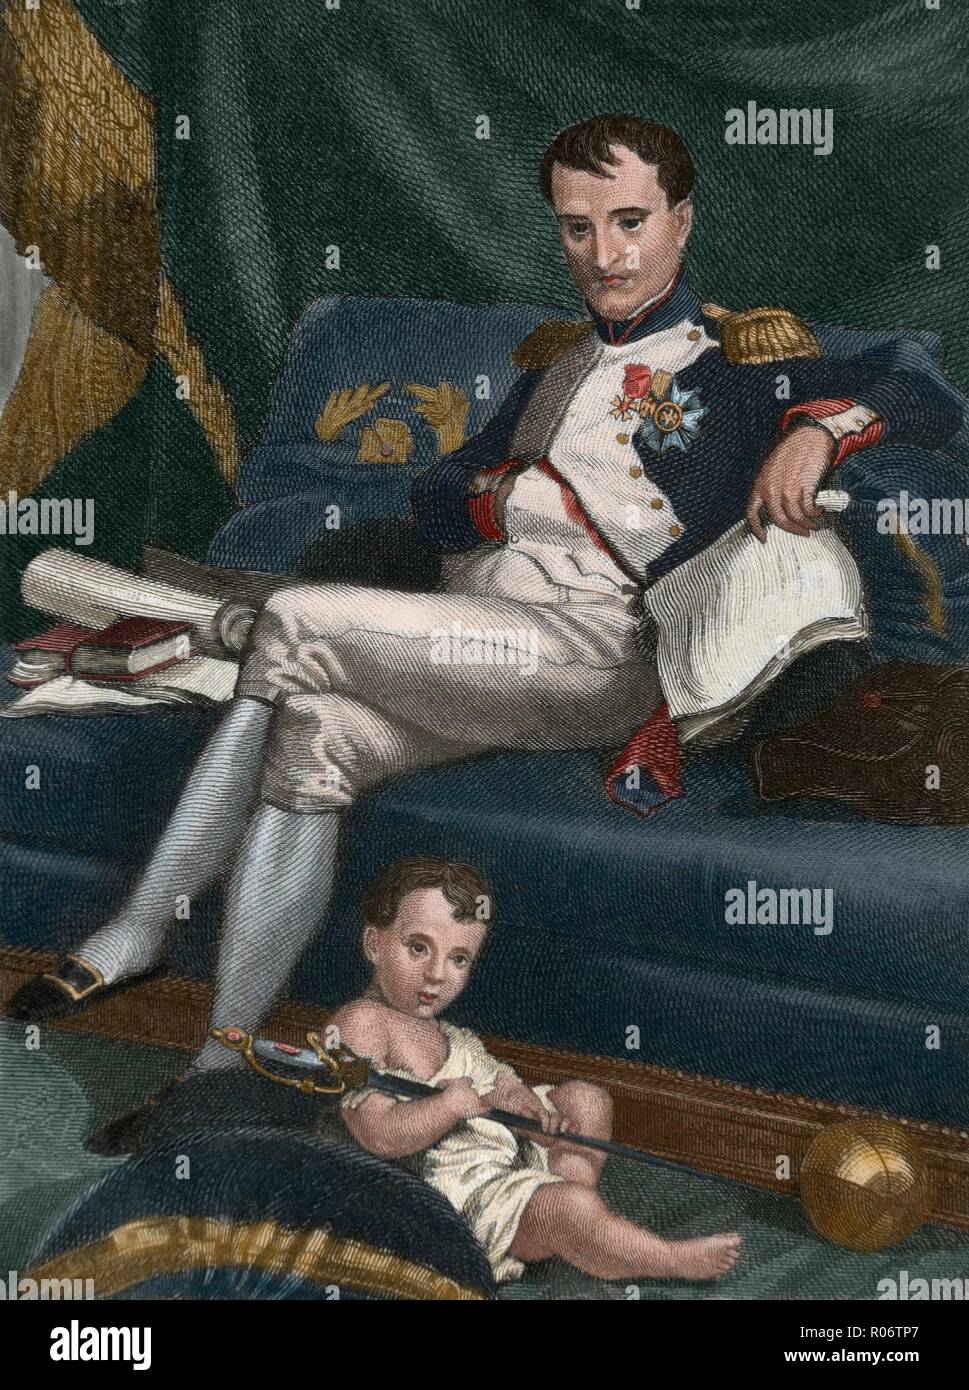 Napoleón I Bonaparte (Ajaccio, 1769-Isla de Santa Elena, 1821). Emperador de los franceses (1804-1815). Napoleón y su hijo, llamado el Rey de Roma (Napoléon II) (1811-1832). Grabado coloreado. Stock Photo